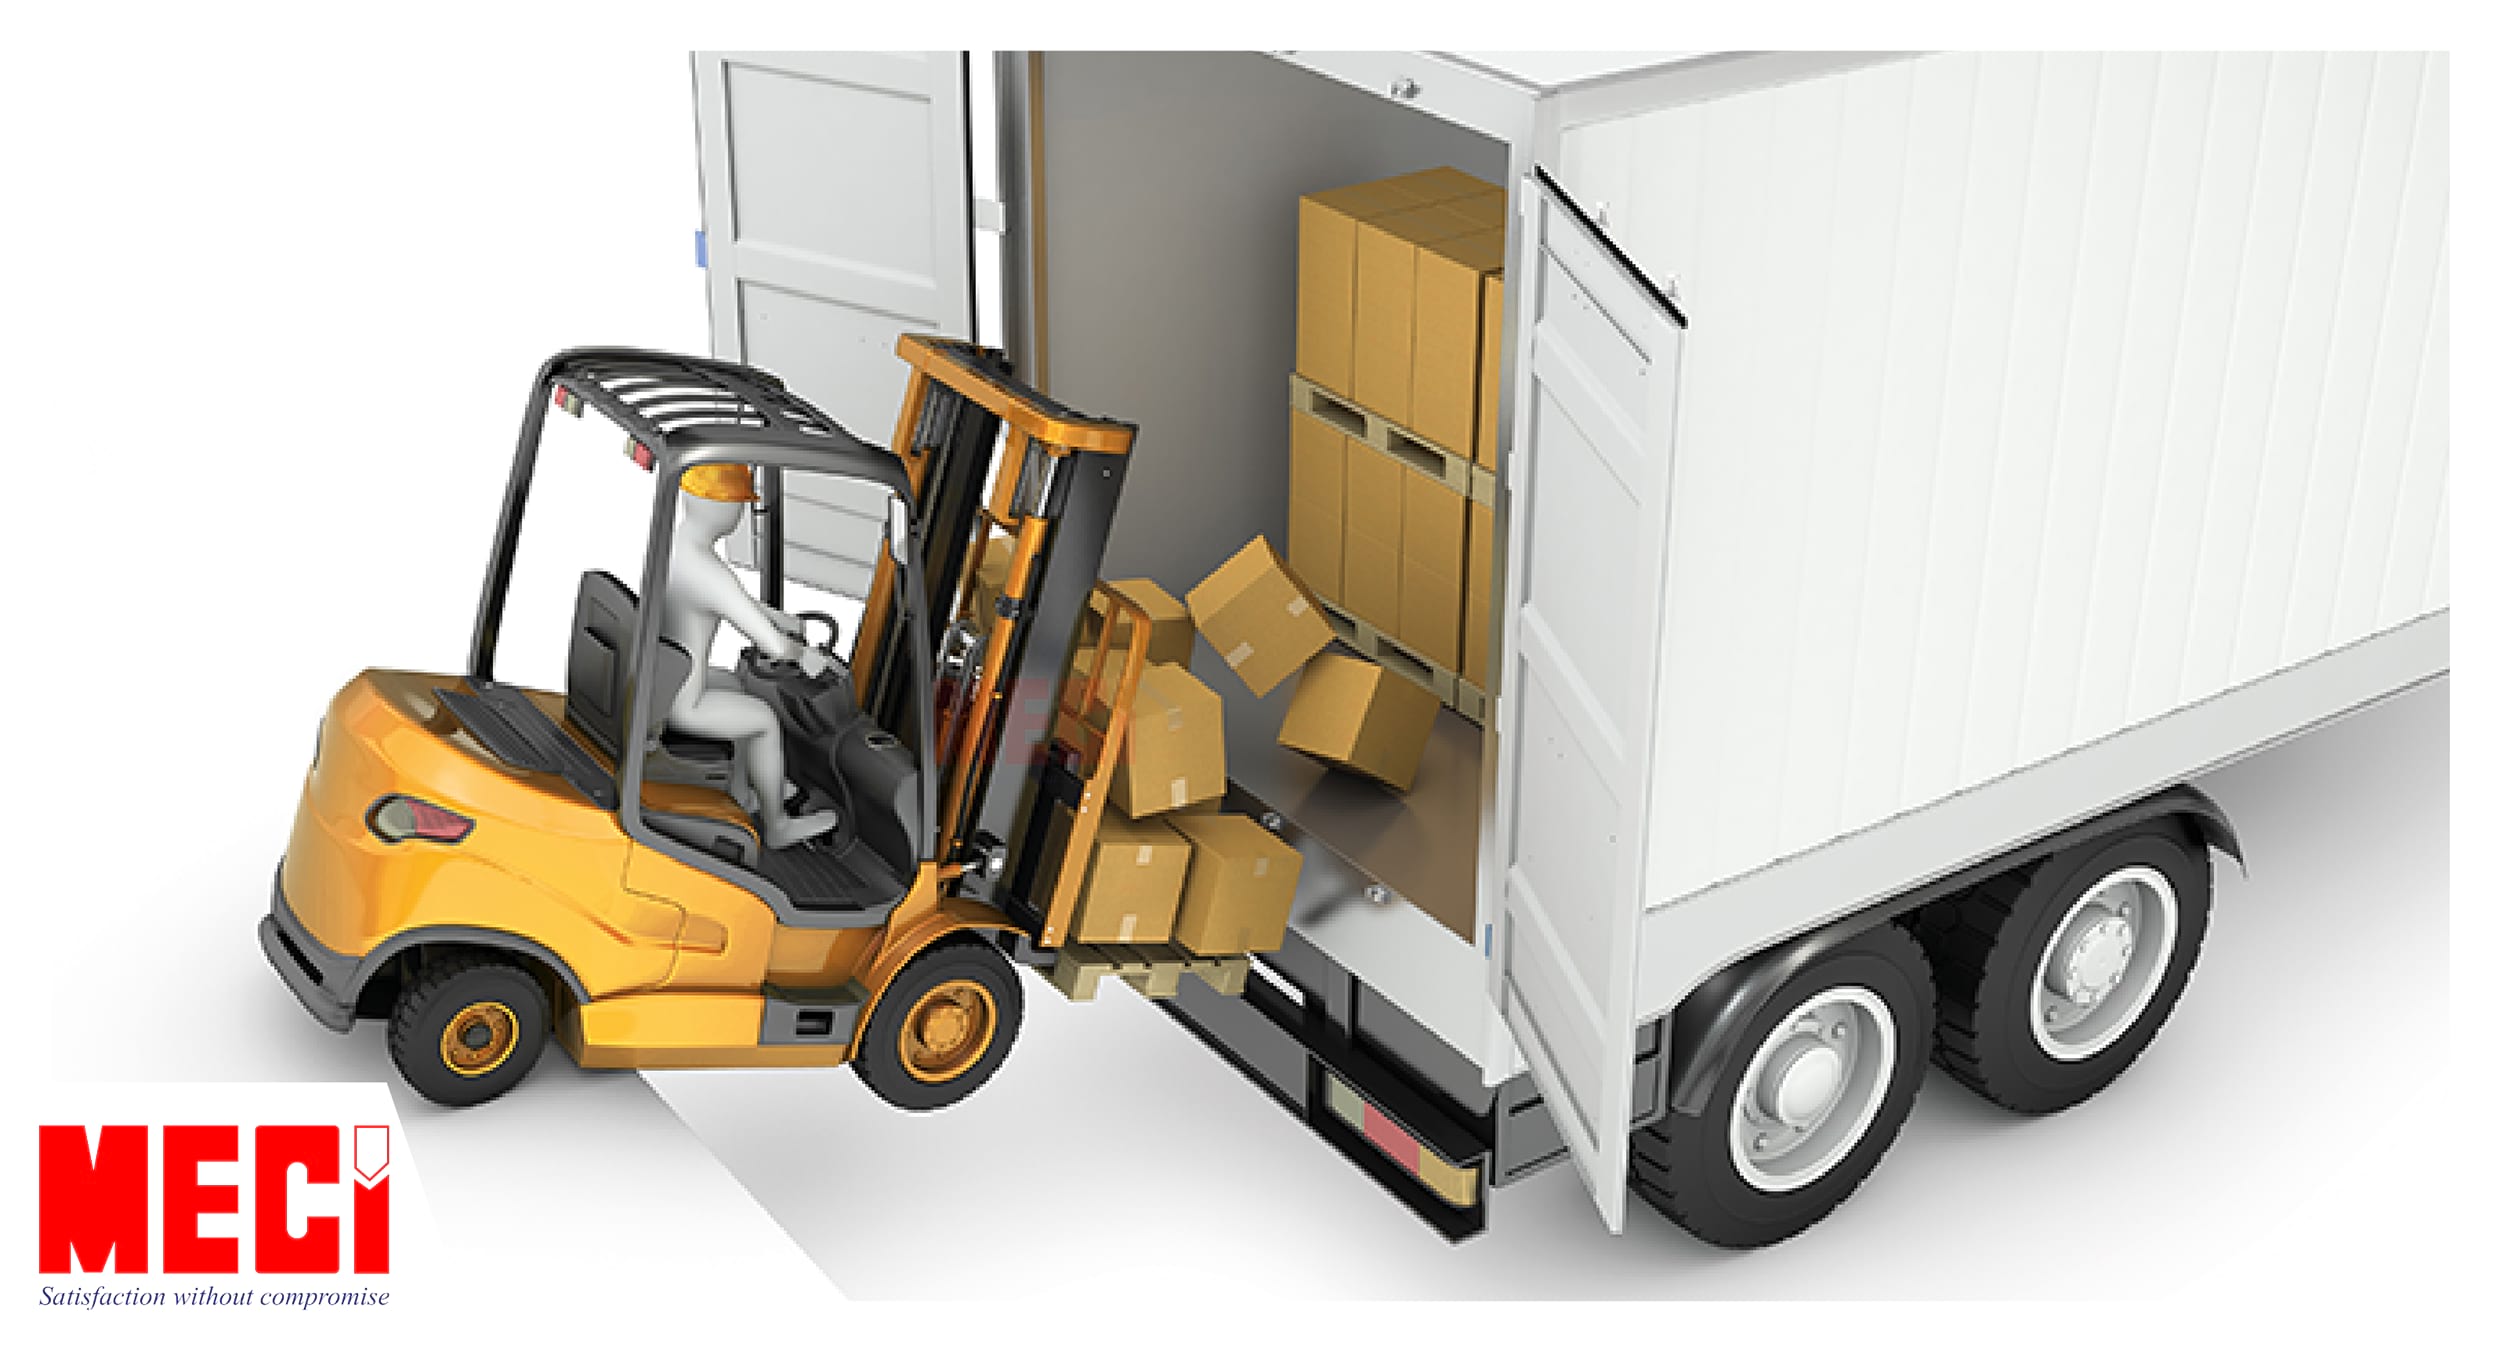 Hàng hóa bị đổ do sự chênh lệch giữa xe nâng và thùng xe tải khi không sử dụng sàn nâng